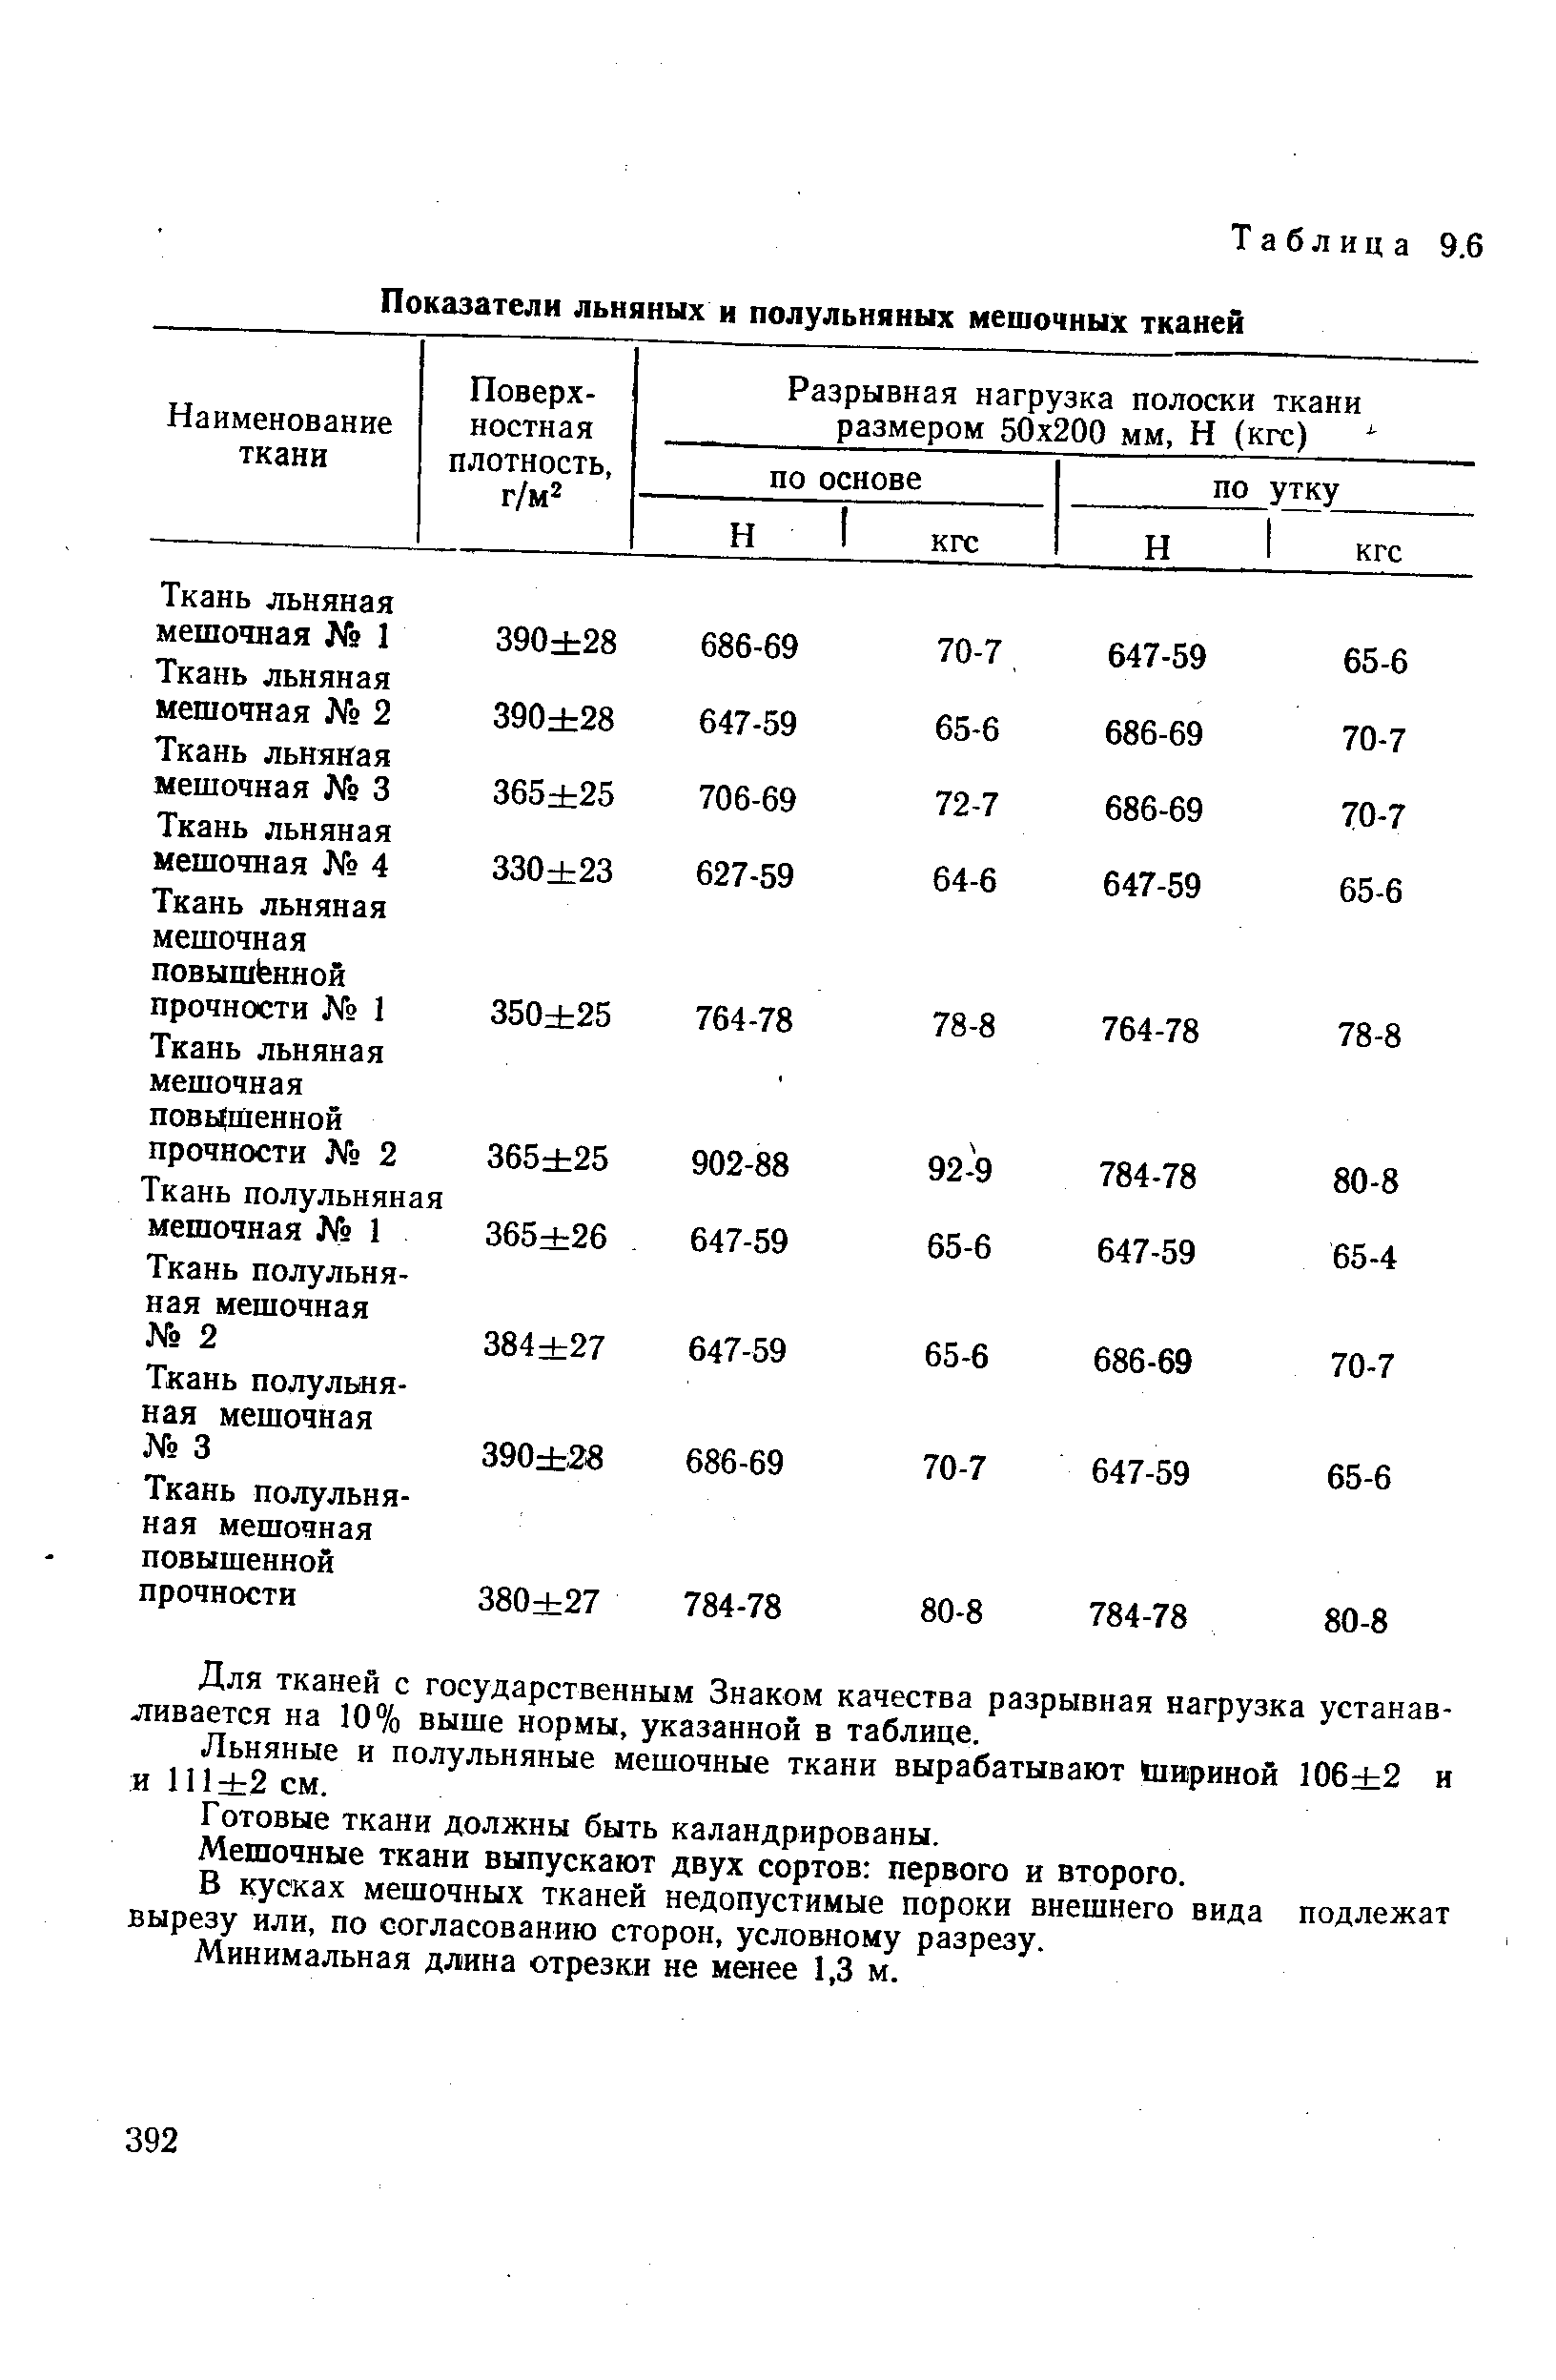 Таблица 9.6 Показатели льняных и полульняных мешочных тканей
